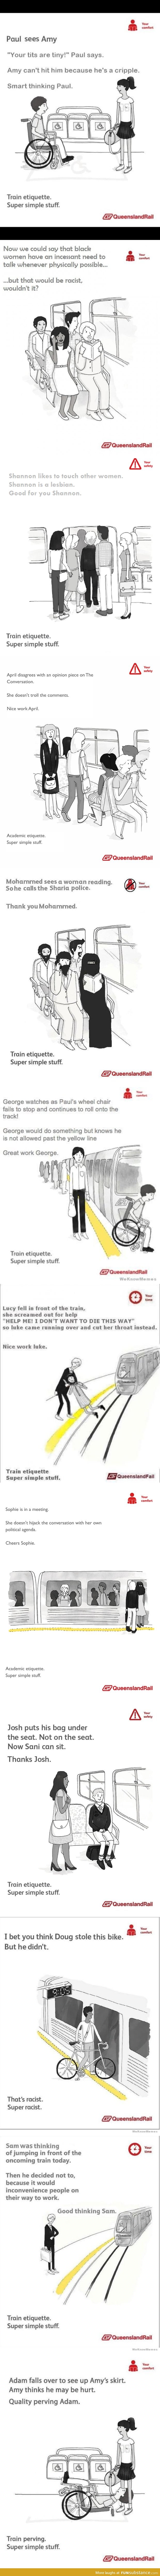 Best train etiquettes